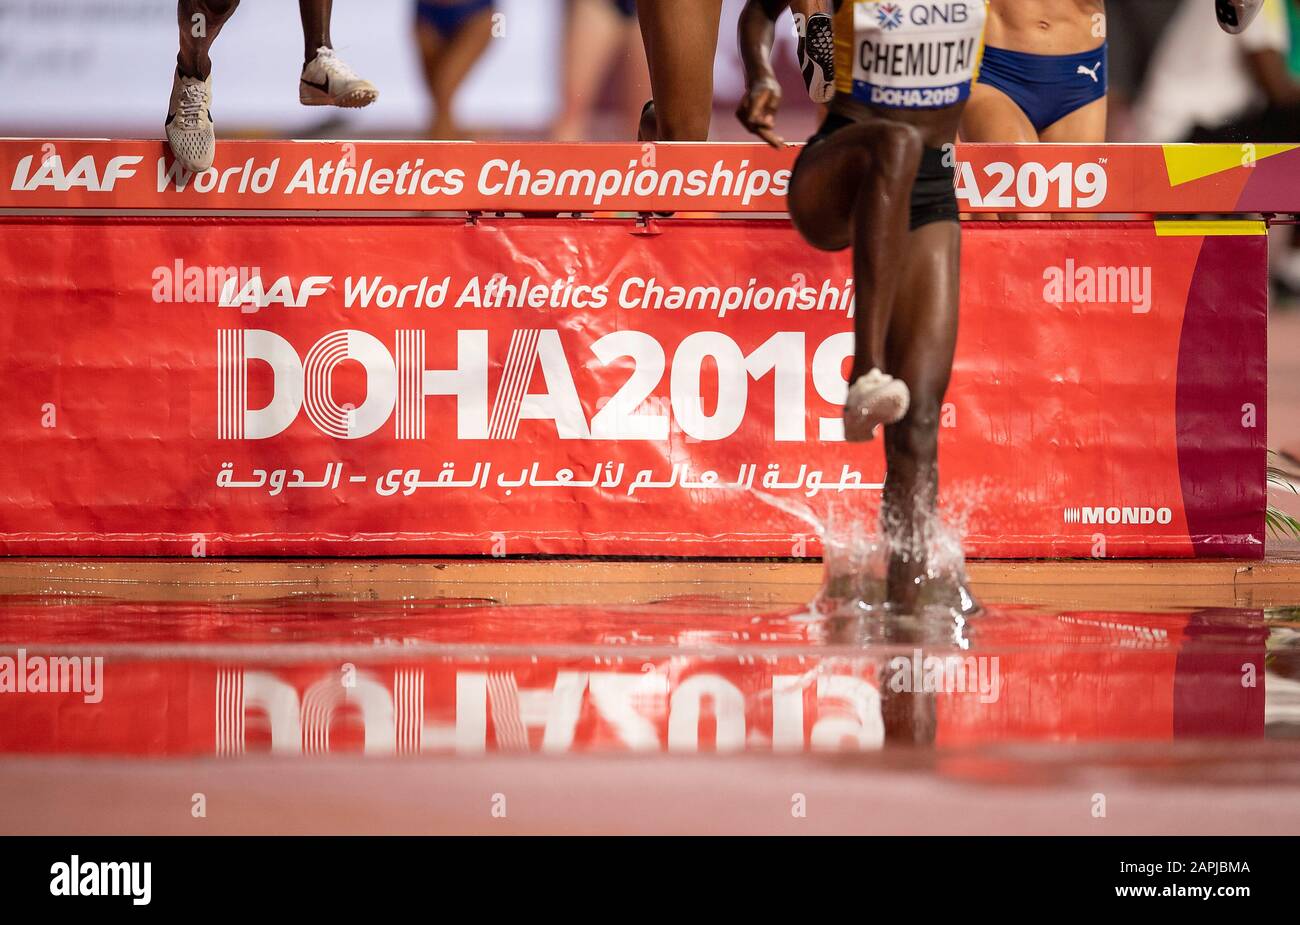 Affiche de la coupe du monde à Wassergraben, 3 000 m d'obstacle pour les femmes, série 1, le 27 septembre 2019 Championnats du monde d'athlétisme 2019 à Doha/Qatar, à partir du 27 septembre. - 10.10.2019. Â | utilisation dans le monde entier Banque D'Images